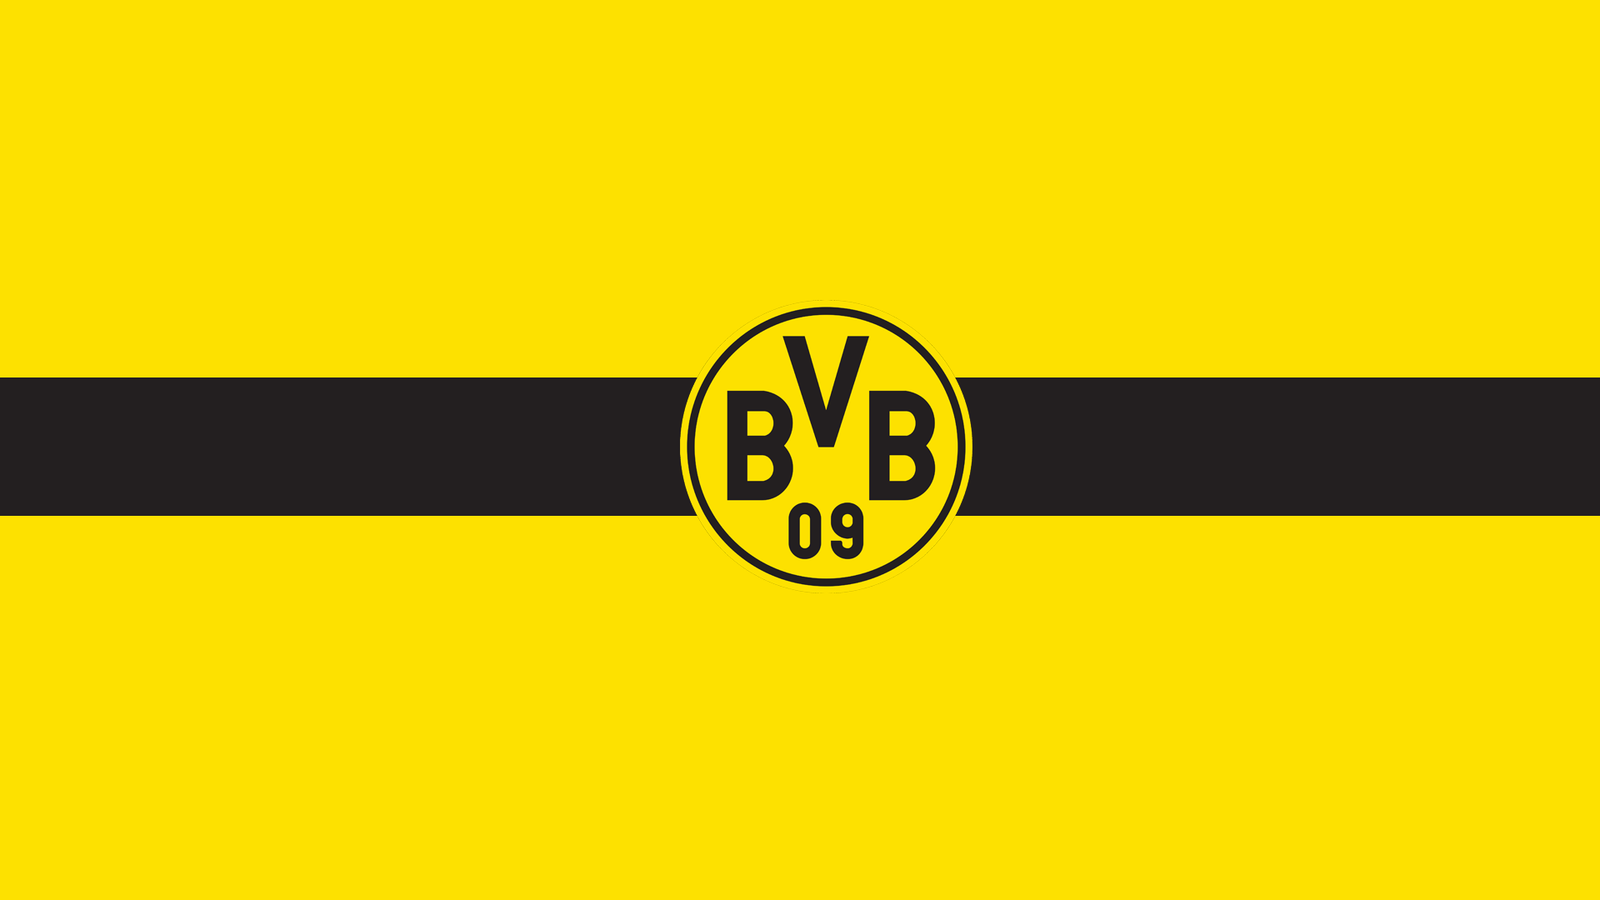 bvb wallpaper,yellow,font,text,flag,line